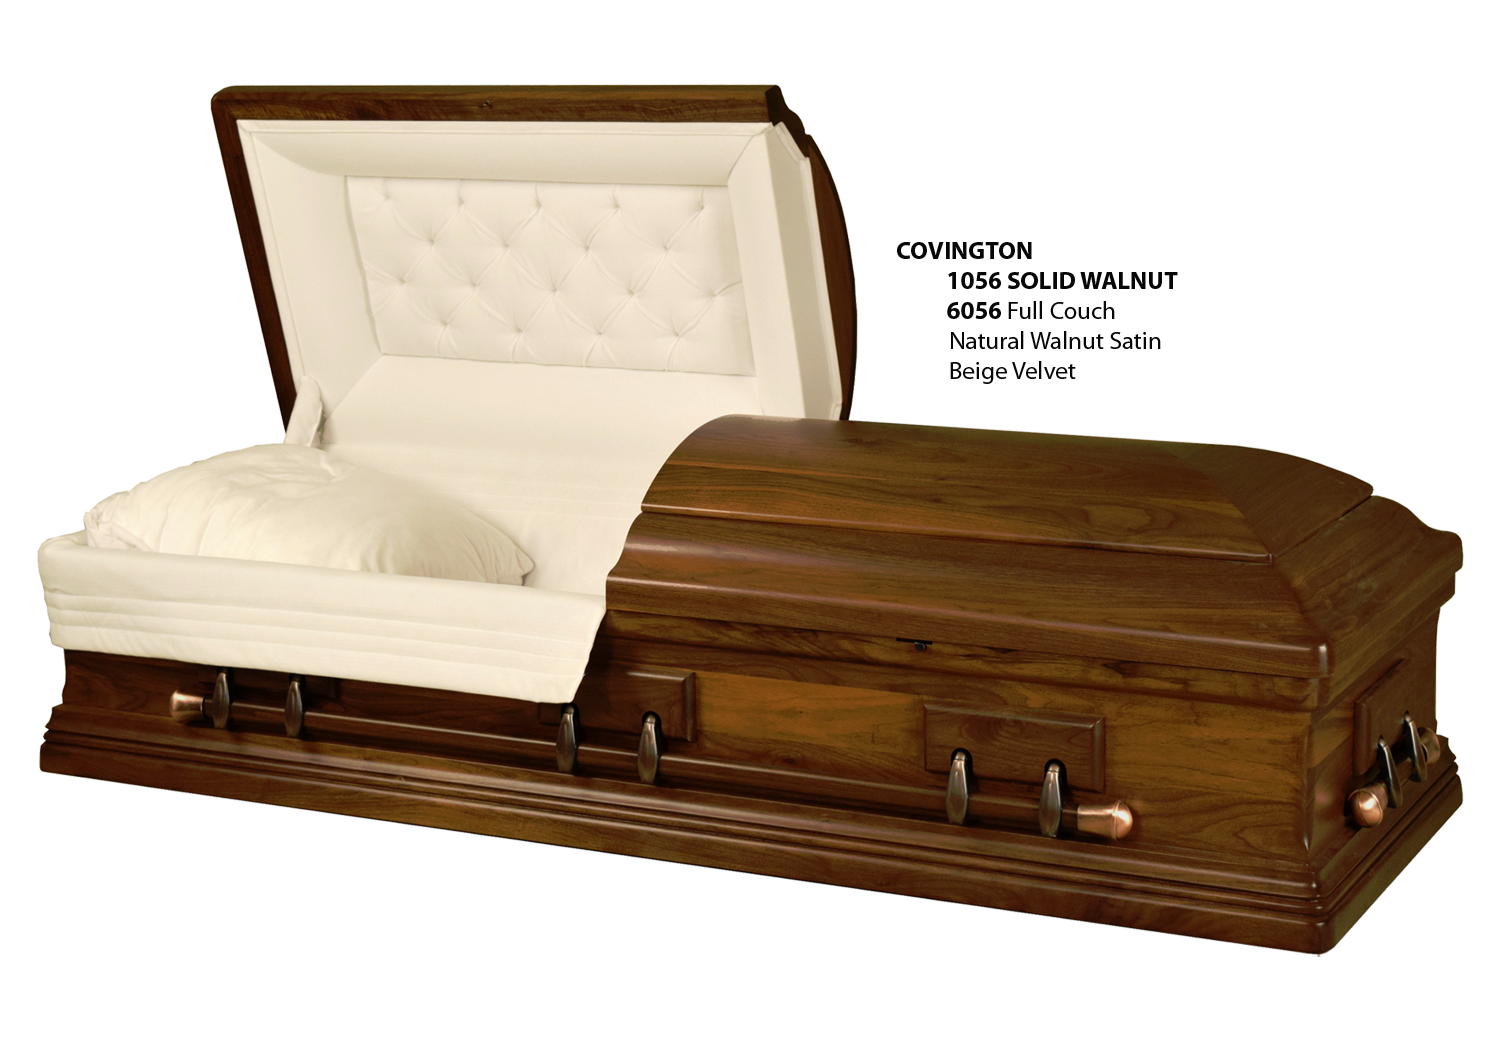 john ritter open casket